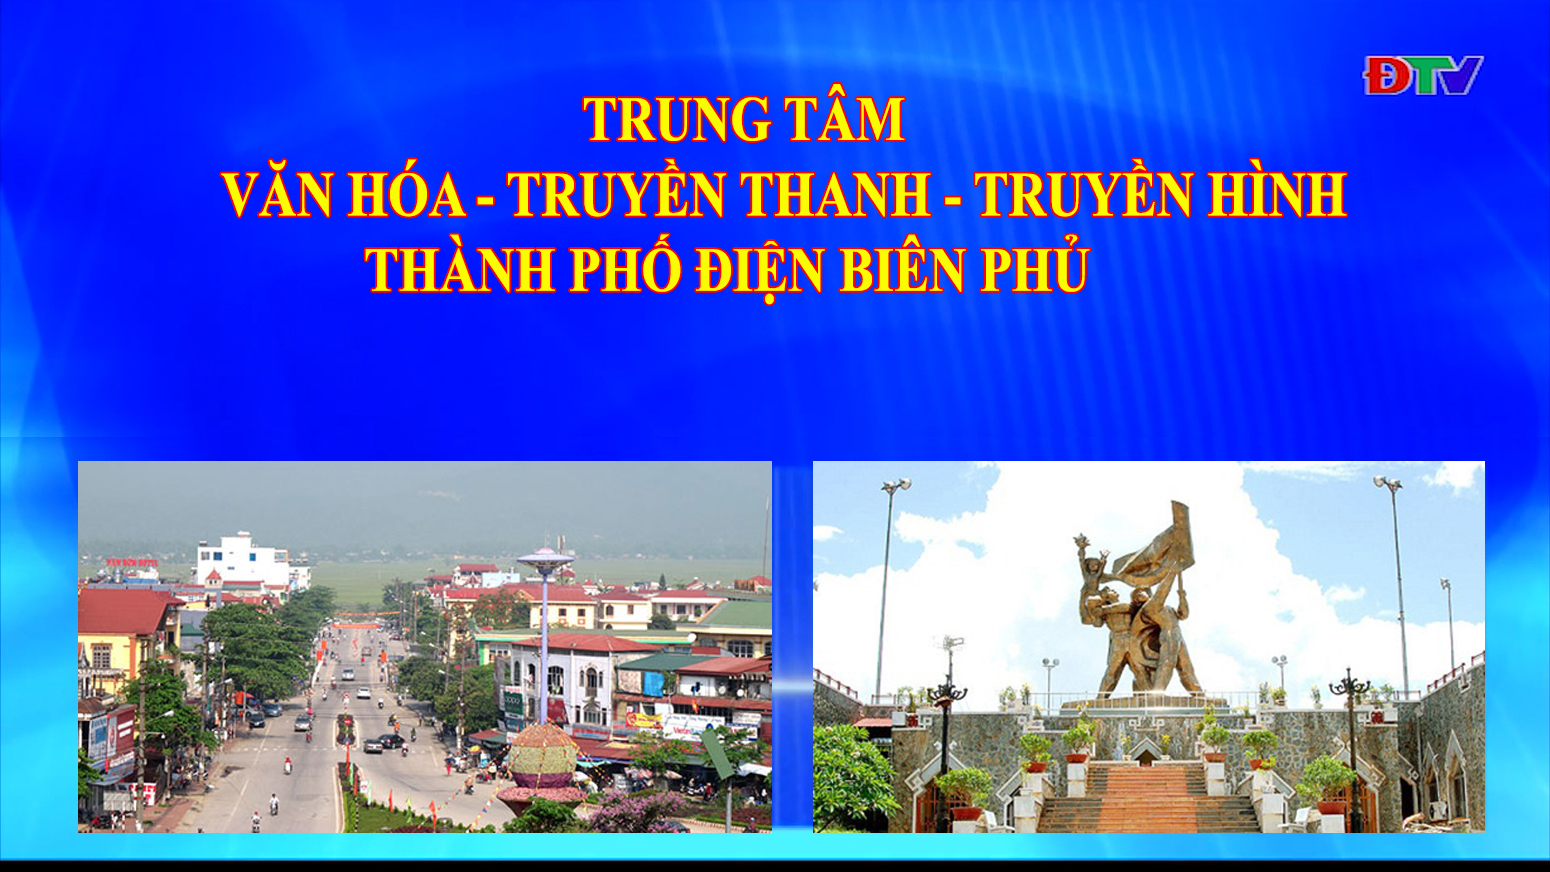 Trung tâm VH-TTTH thành phố Điện Biên Phủ (Ngày 11-1-2022)